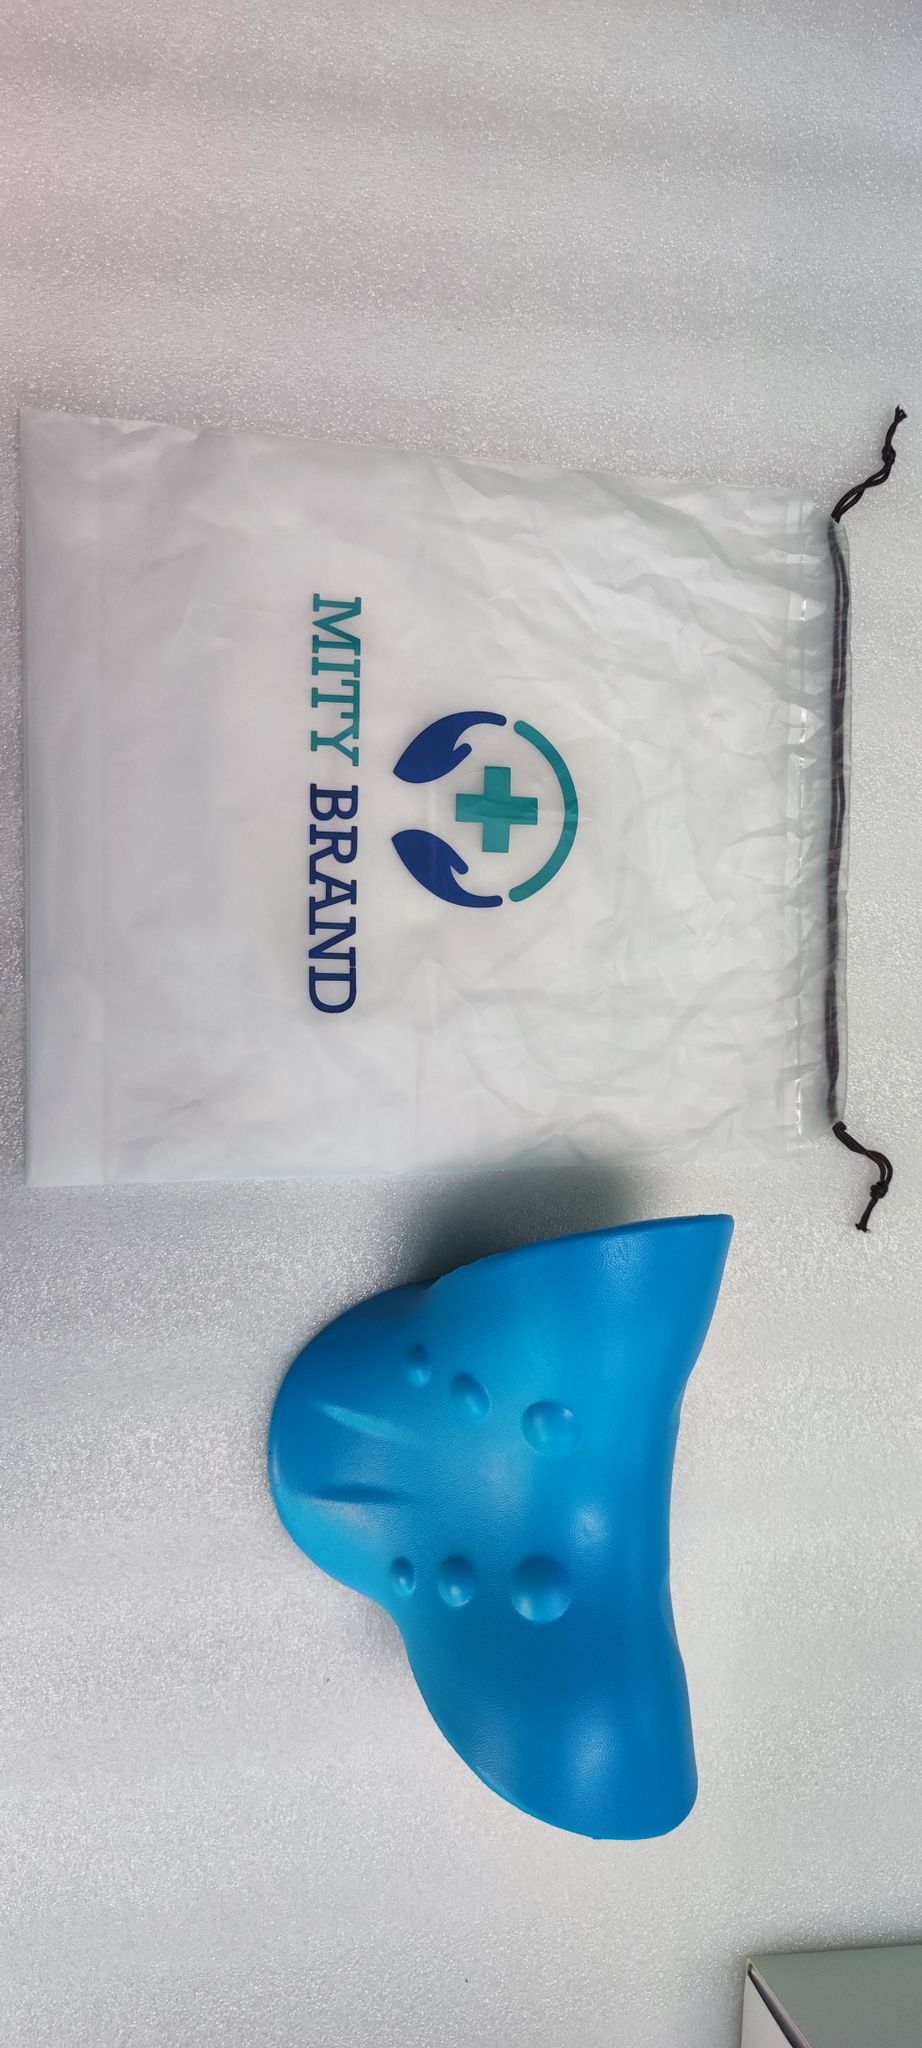 ZeniComfort Almohada de tracción Cervical - Cojin Cervical para